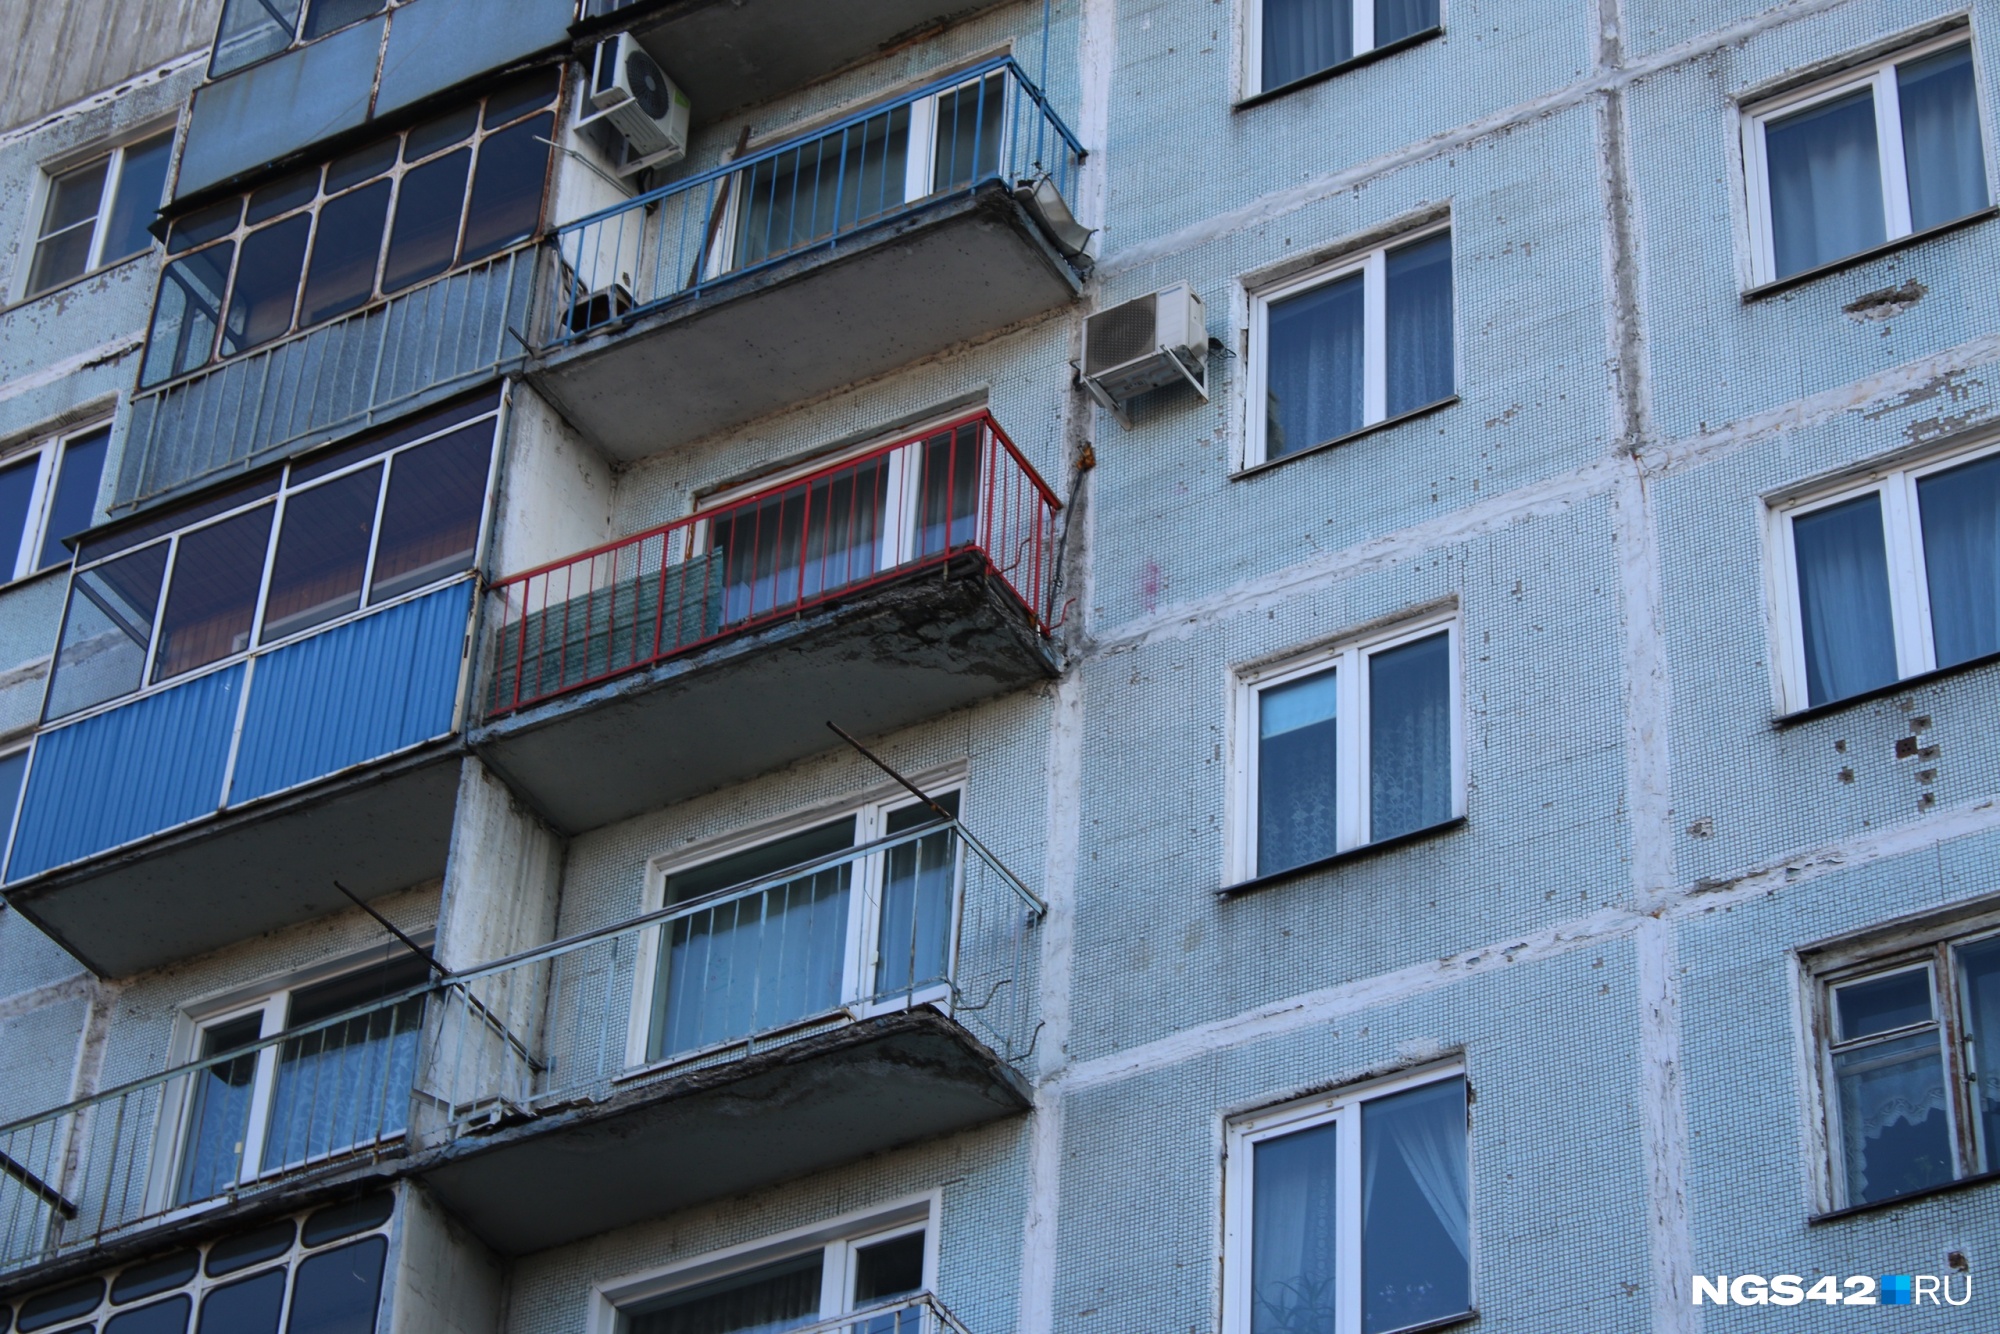 Житель Новокузнецка придумал схему переоформления и продажи чужих квартир. За это его будут судить